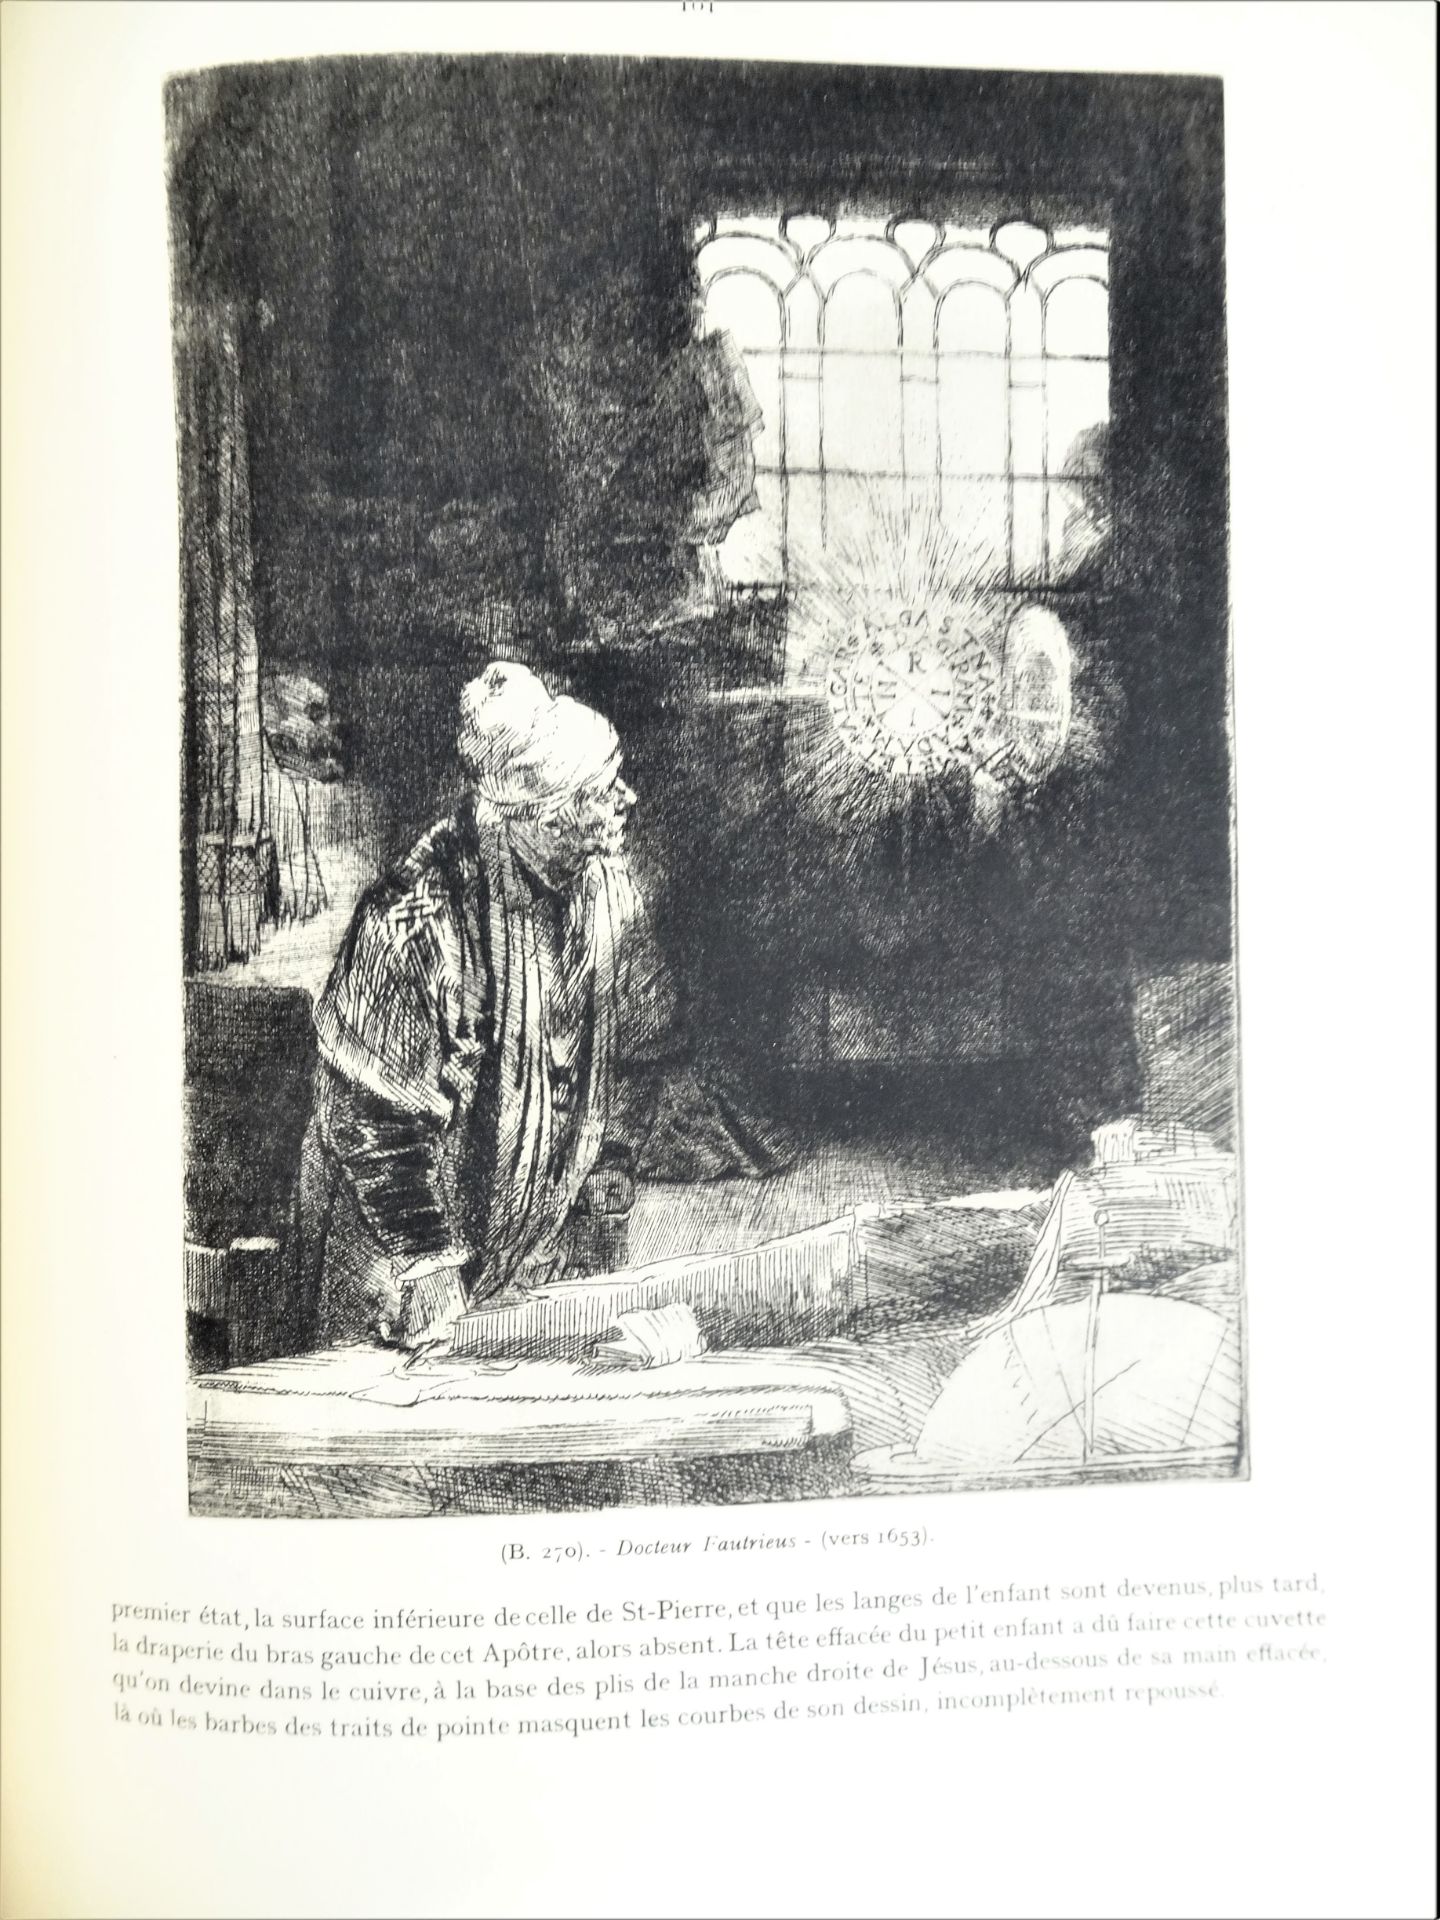 |Art|André Charles Coppier, "Les eaux-fortes de Rembrandt", 1922, limité. Paris, Armand Colin, " - Image 8 of 15